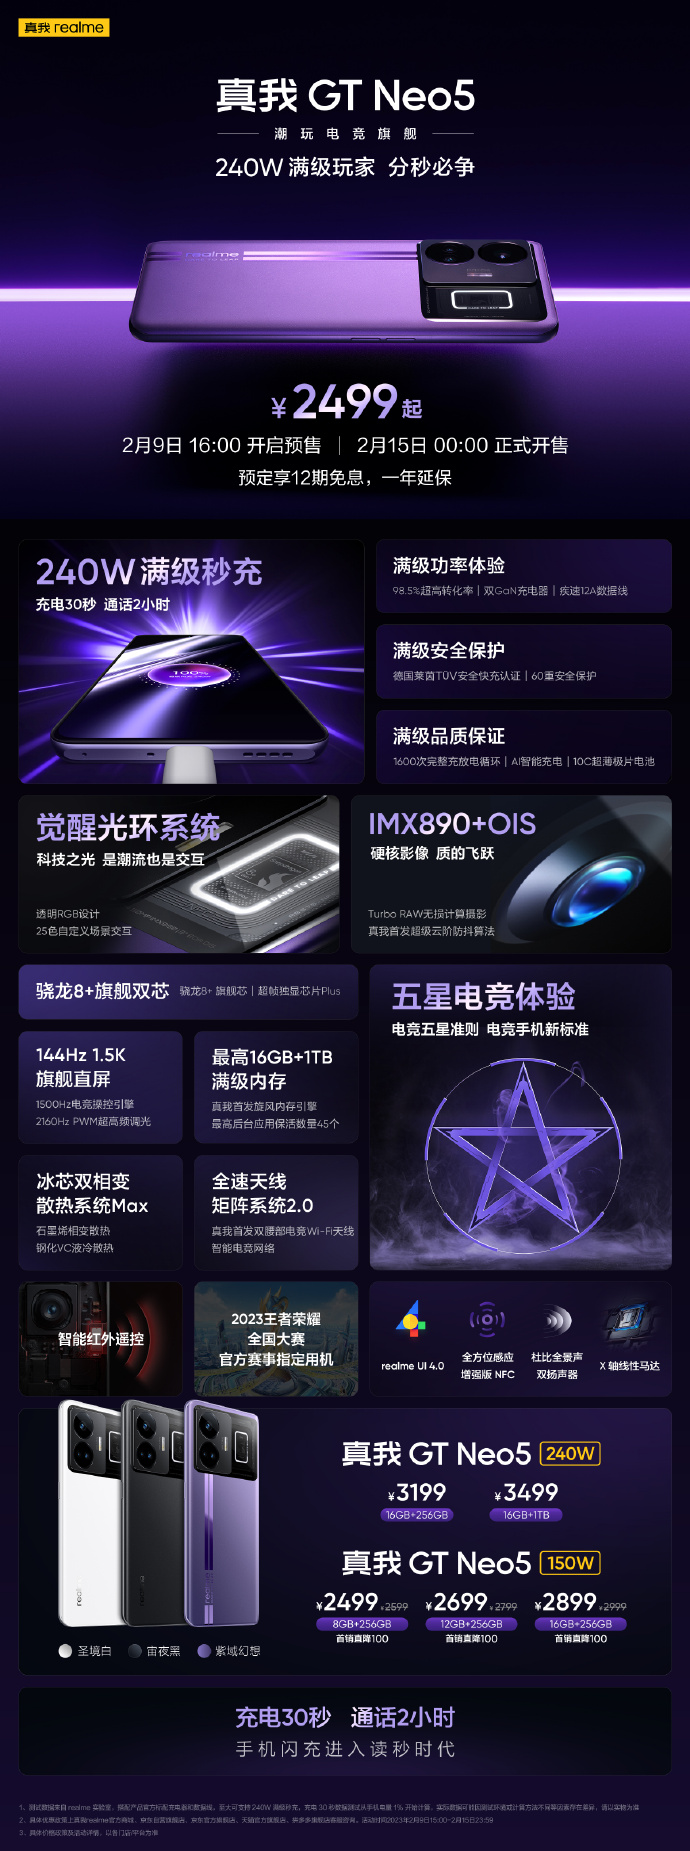 premiera Realme GT Neo 5 cena specyfikacja techniczna